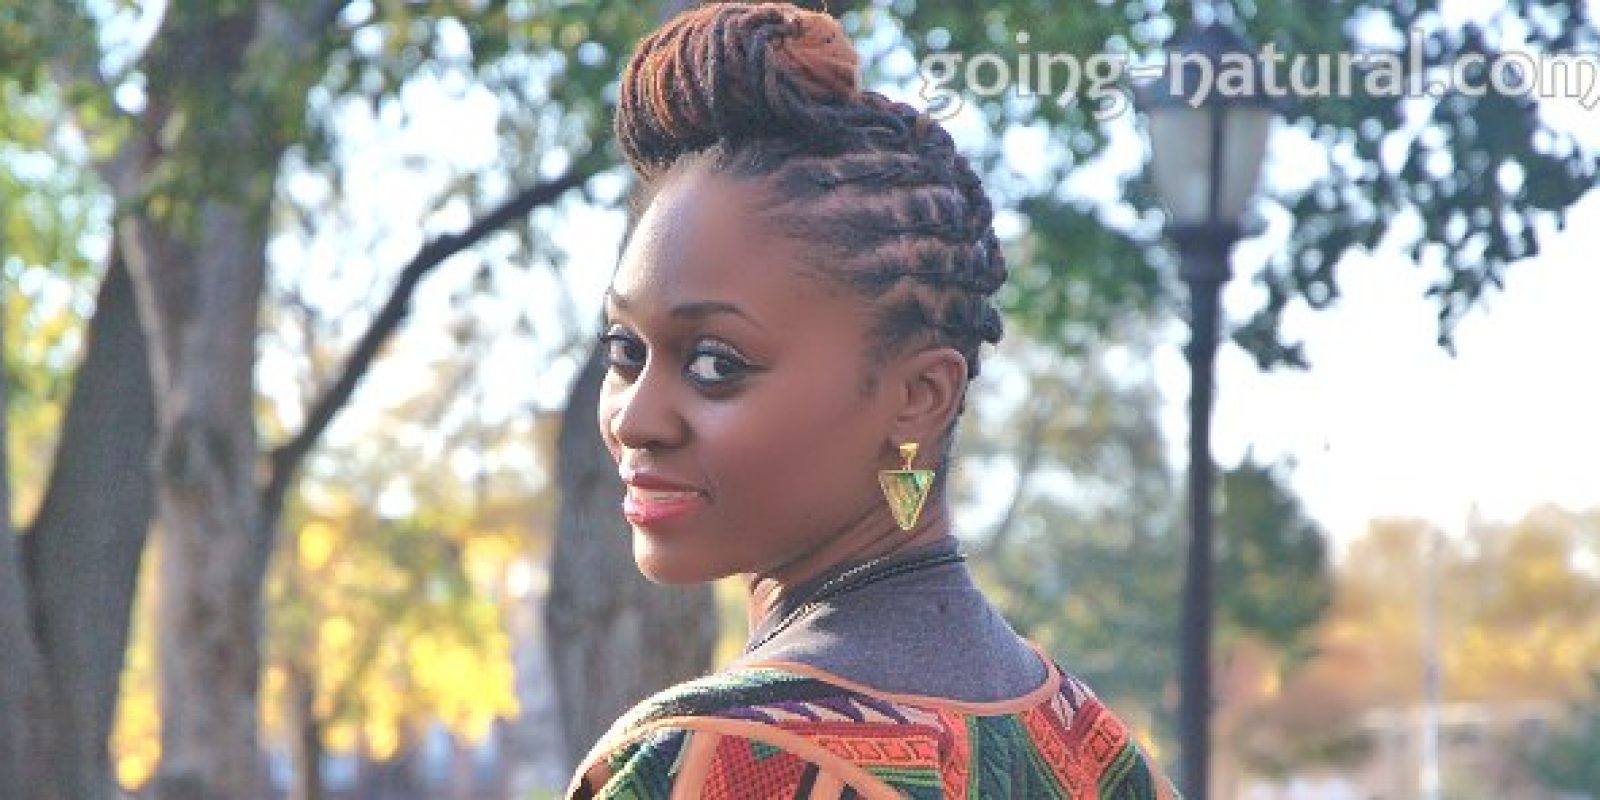 Hair Artist Ebony owner of Locks of Nu